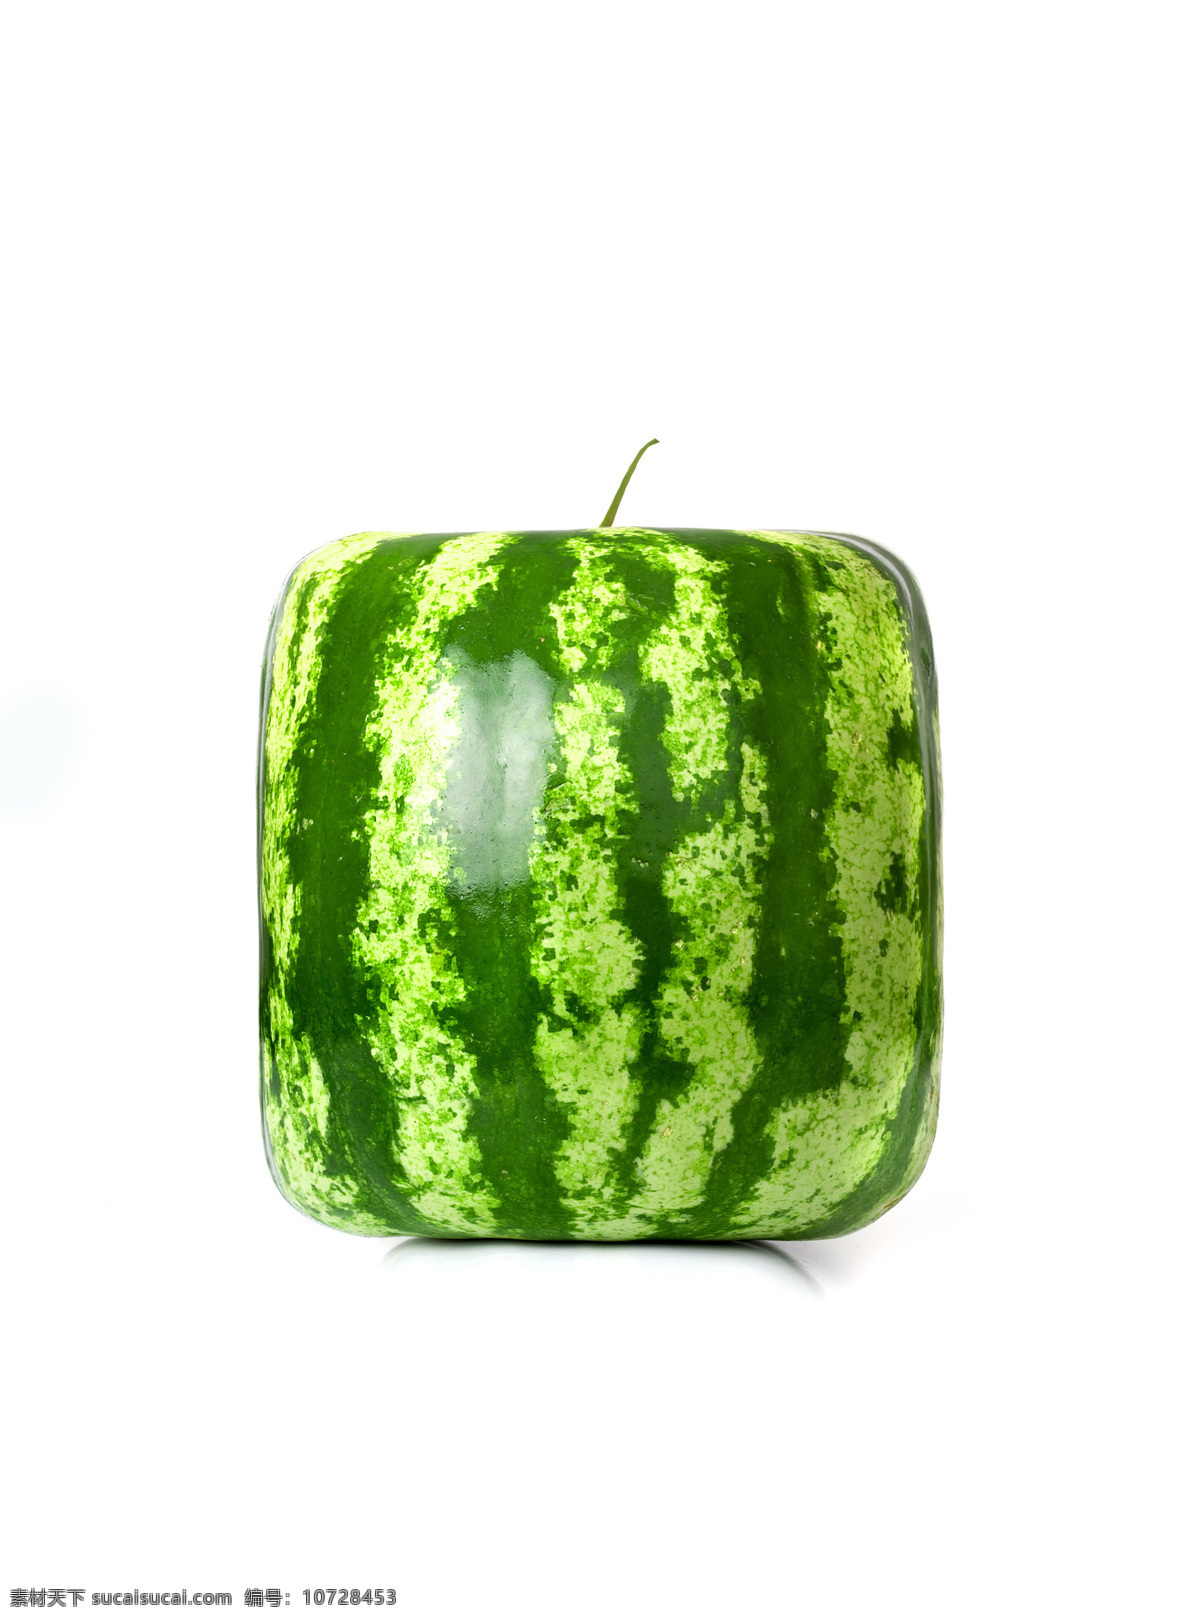 西瓜创意水果 西瓜 创意水果 水果广告 创意设计 时尚设计 创意广告 创新广告 生物世界 水果